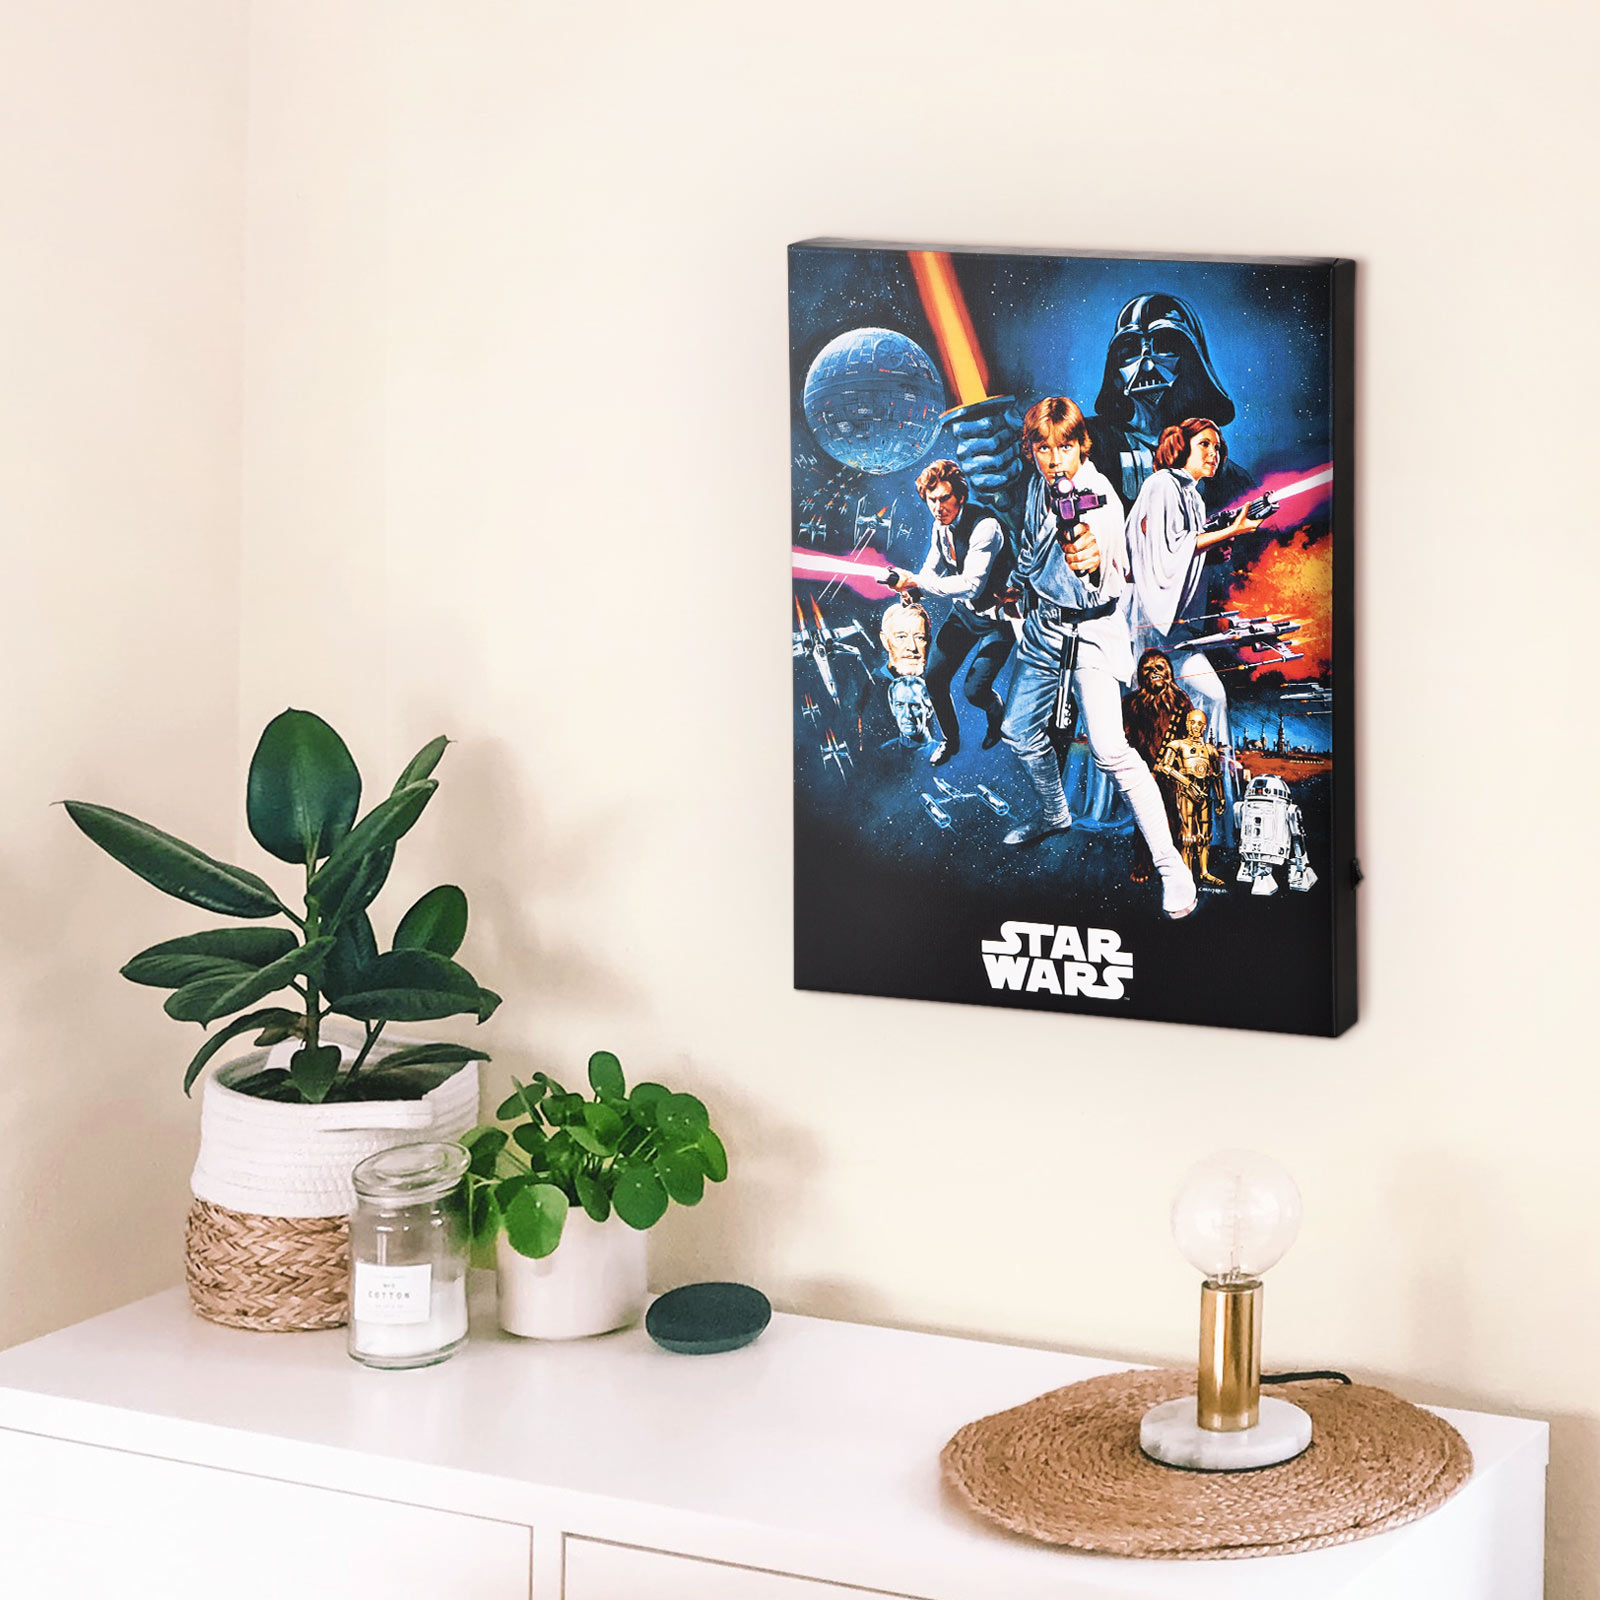 Star Wars - A New Hope Wandbild mit Licht